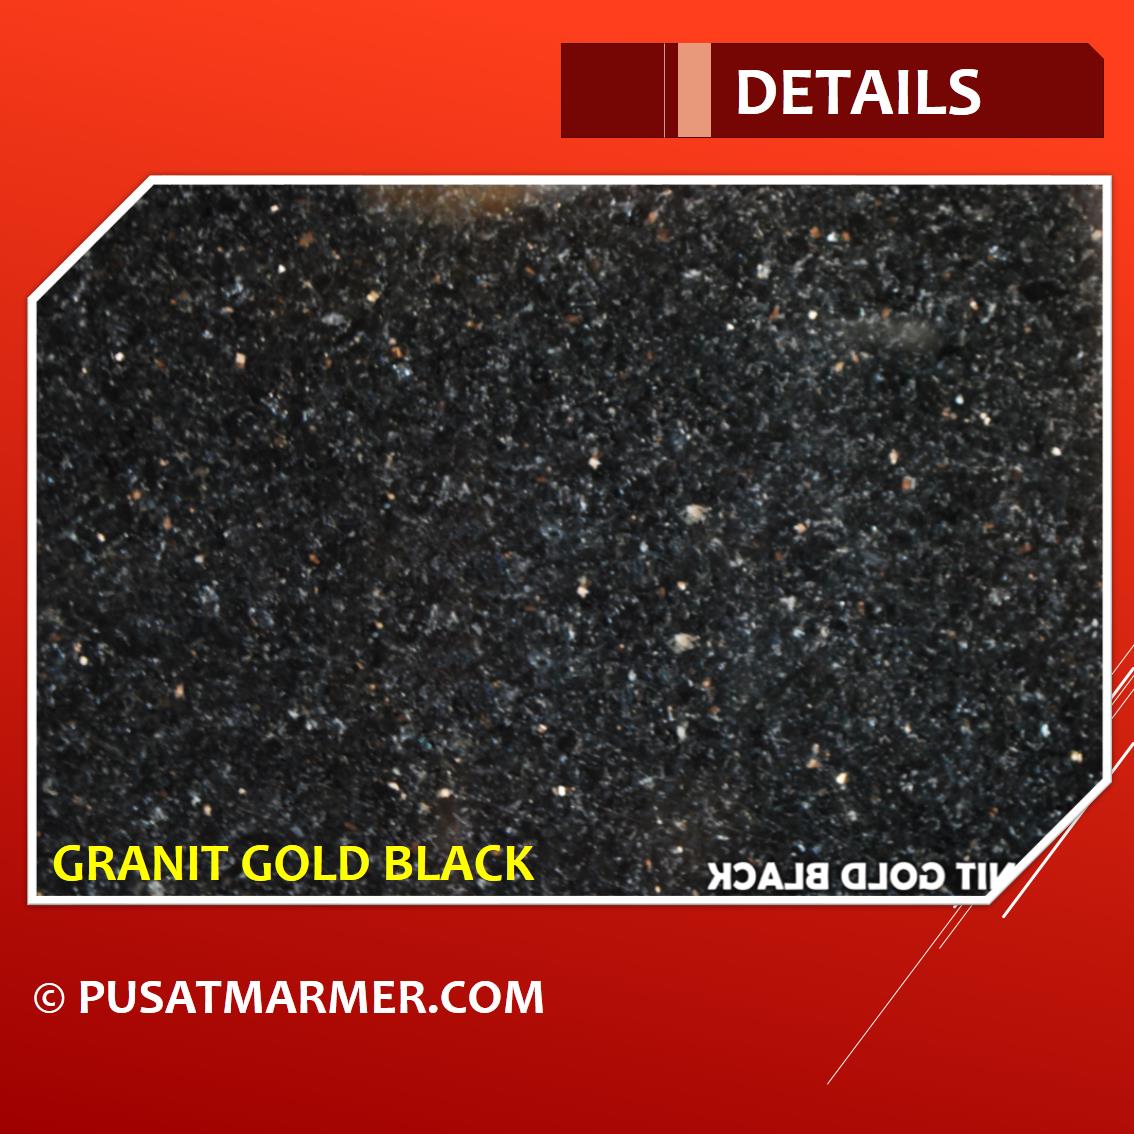 Jual Granit Gold Black Harga Murah Surabaya oleh PT Pusat 